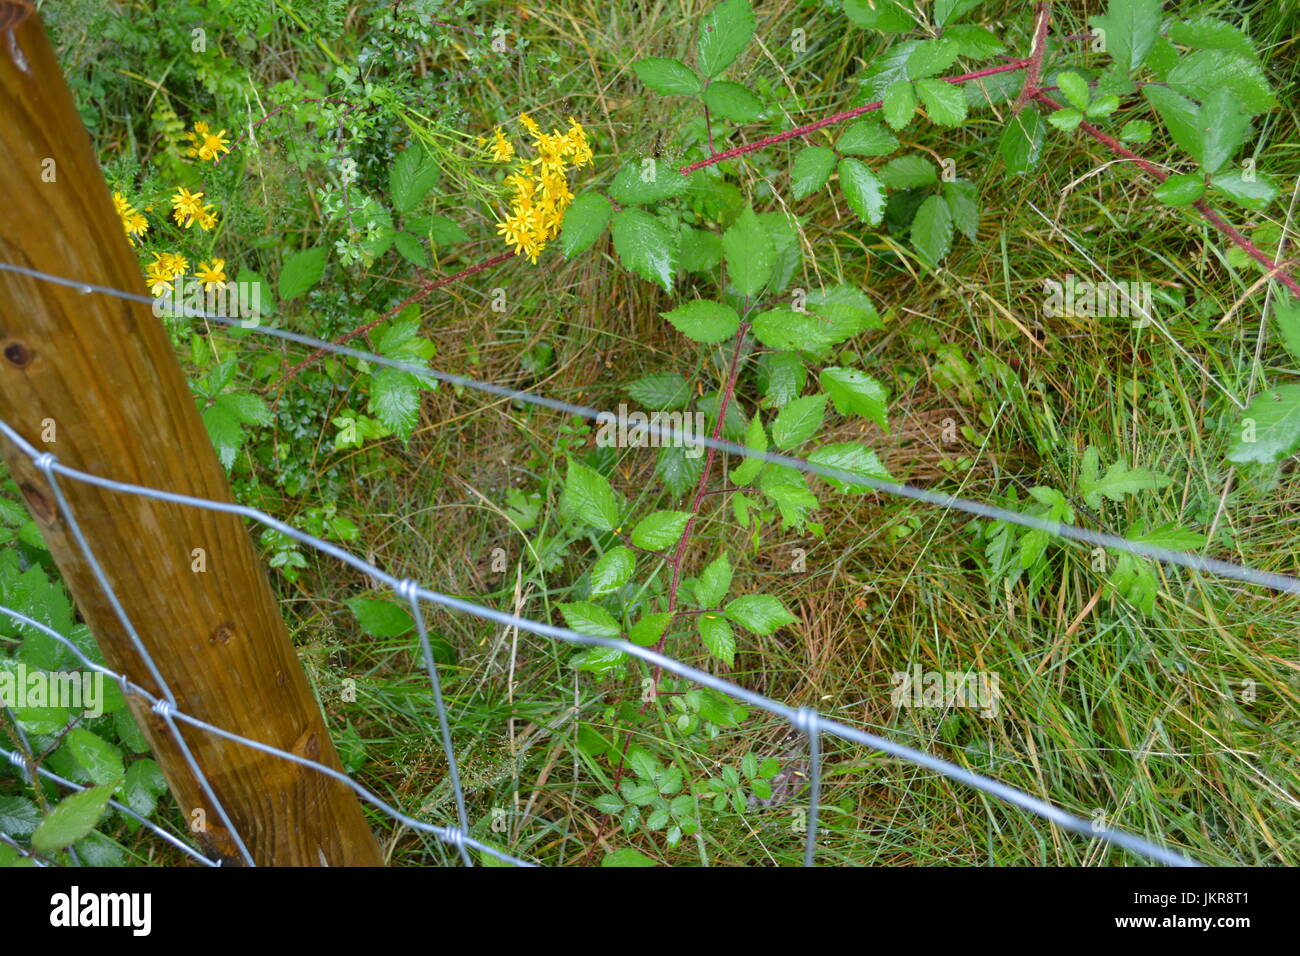 Clôture La clôture avec stock poster à l'endroit dans la végétation mature jardin sauvage d'épines fleurs sauvages et les herbes hautes à l'arrière-plan limite re UK d'escrime Banque D'Images